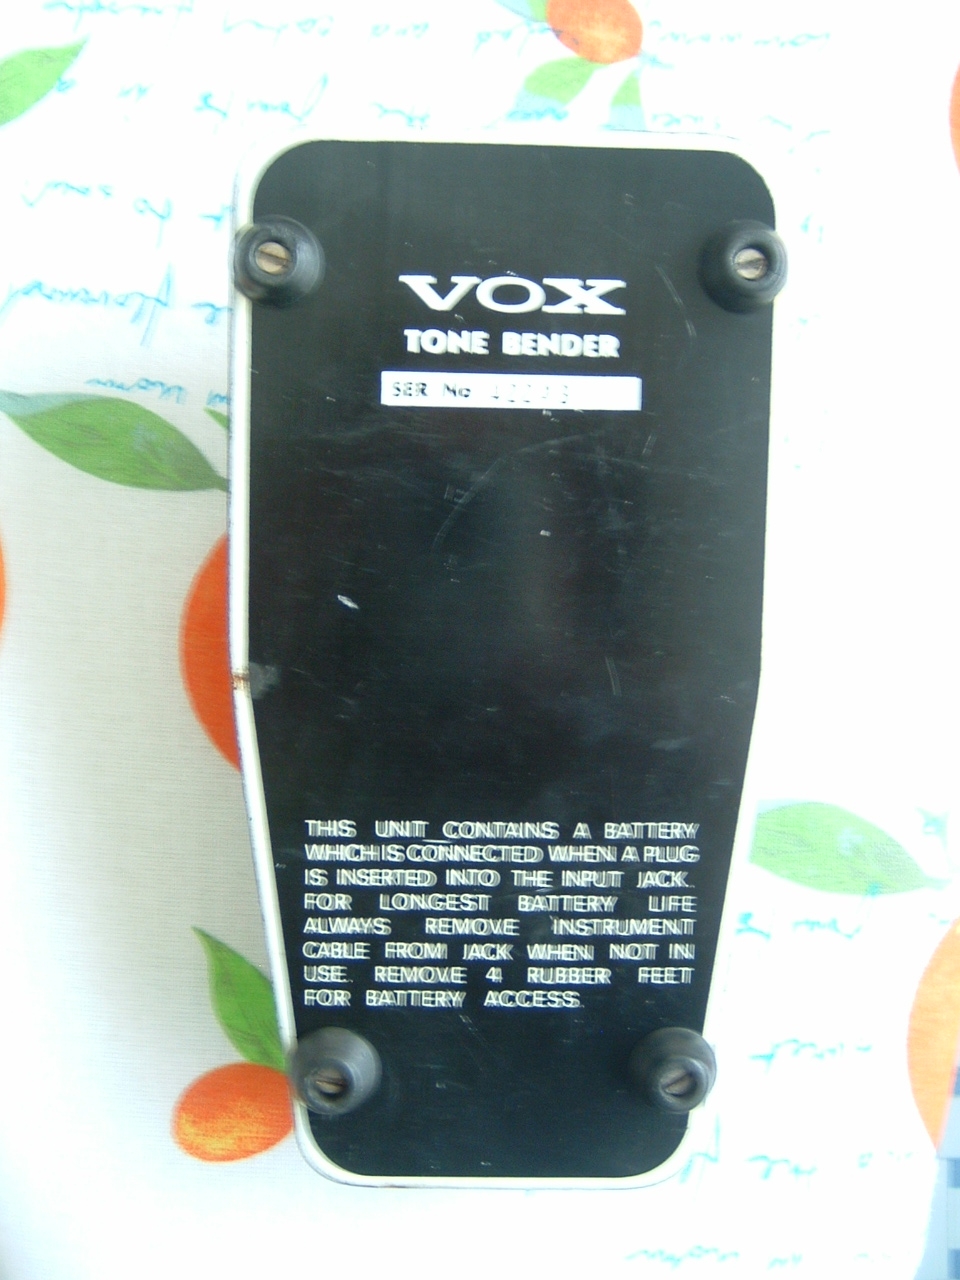 Vox tone bender mkI,5, italian tone bender